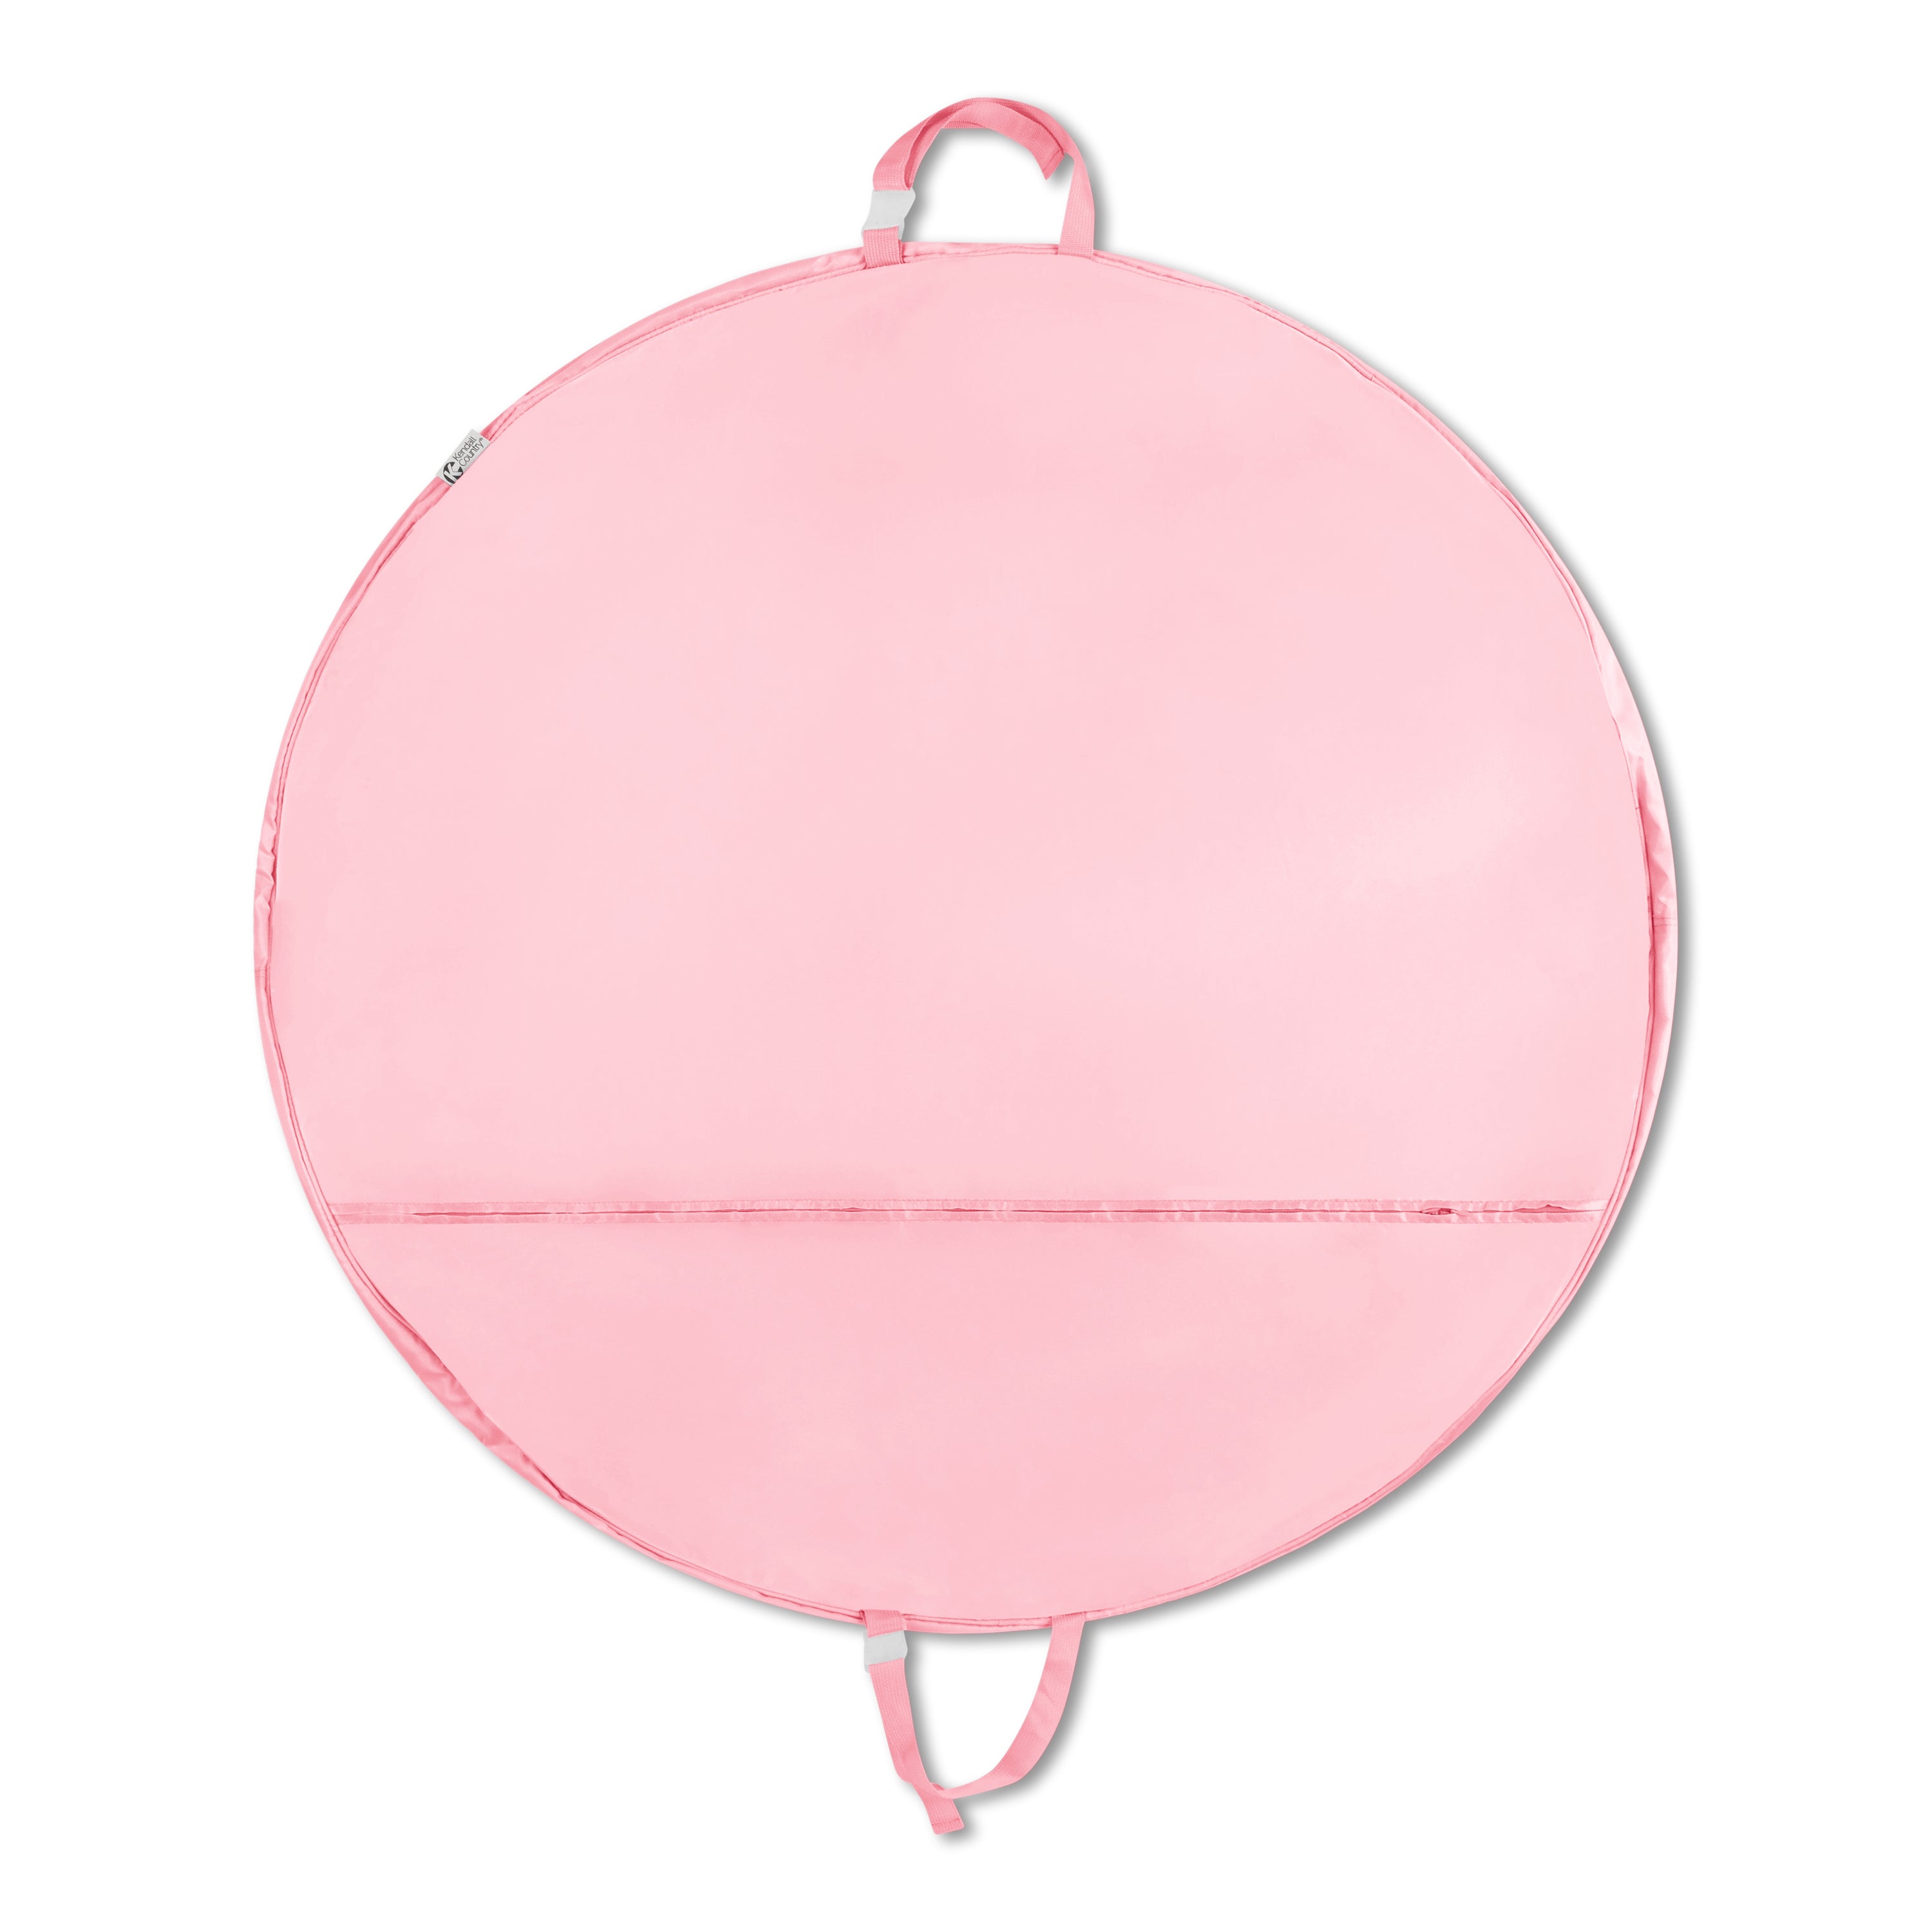 Large Pancake Tutu Garment Bag - Cotton Candy Pink, 40&quot;